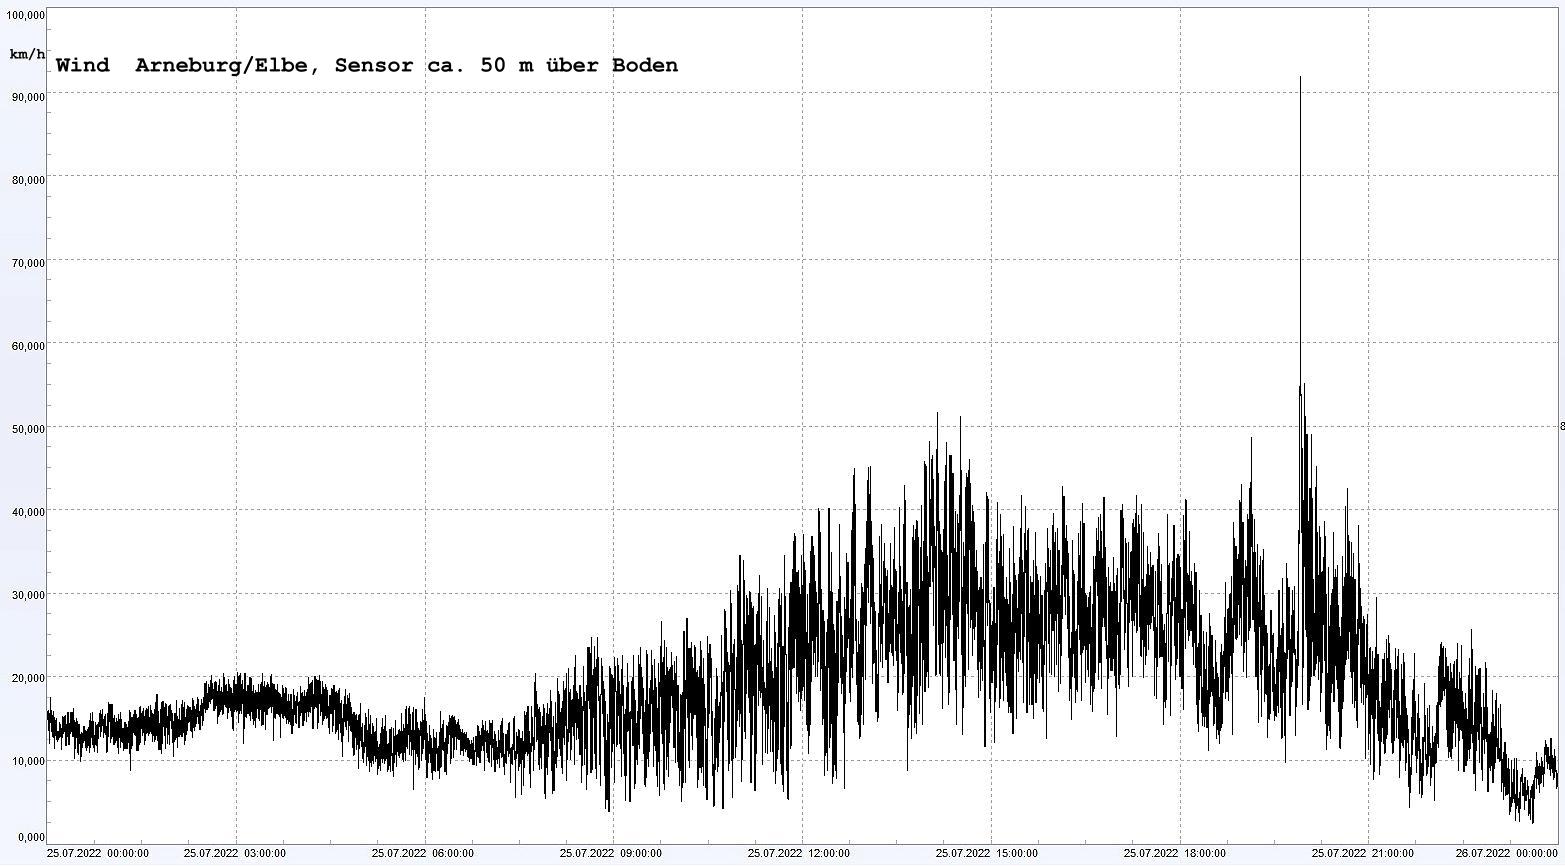 Arneburg Winddaten 25.07.2022, 
  Sensor auf Gebude, ca. 50 m ber Erdboden, 5s-Aufzeichnung